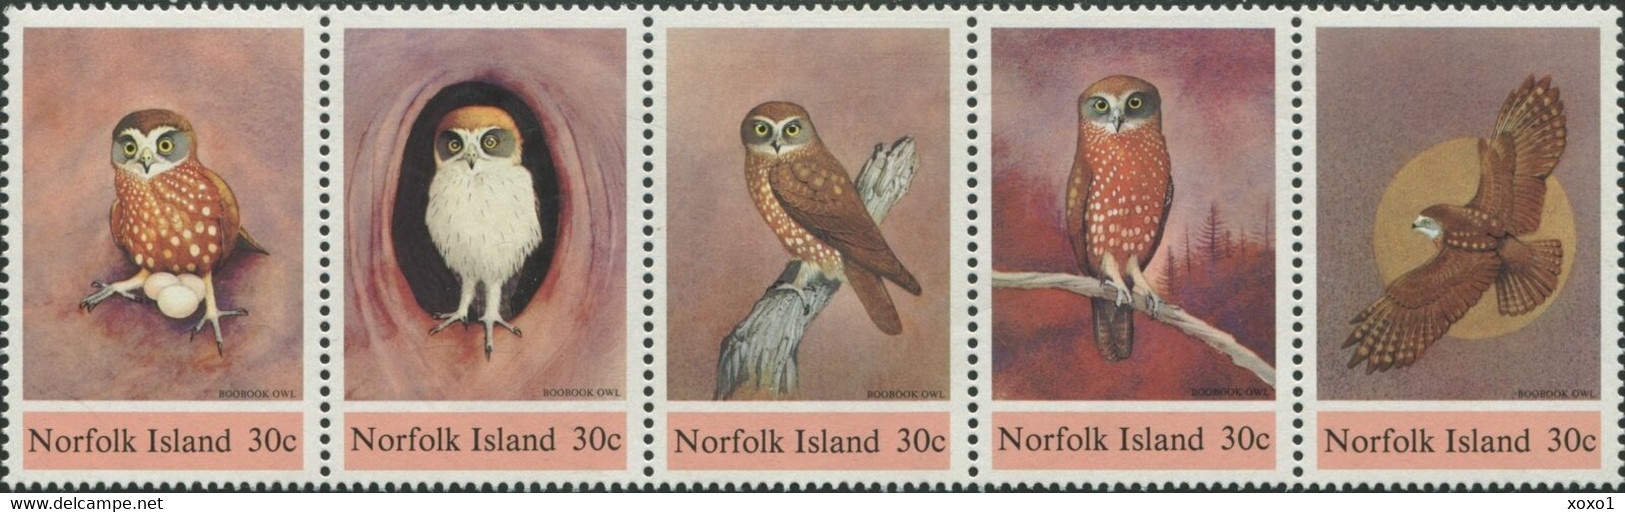 Norfolk 1984 MiNr. 339 - 343  Norfolk-Insel Birds Owls 5v MNH** 9,50 € - Owls